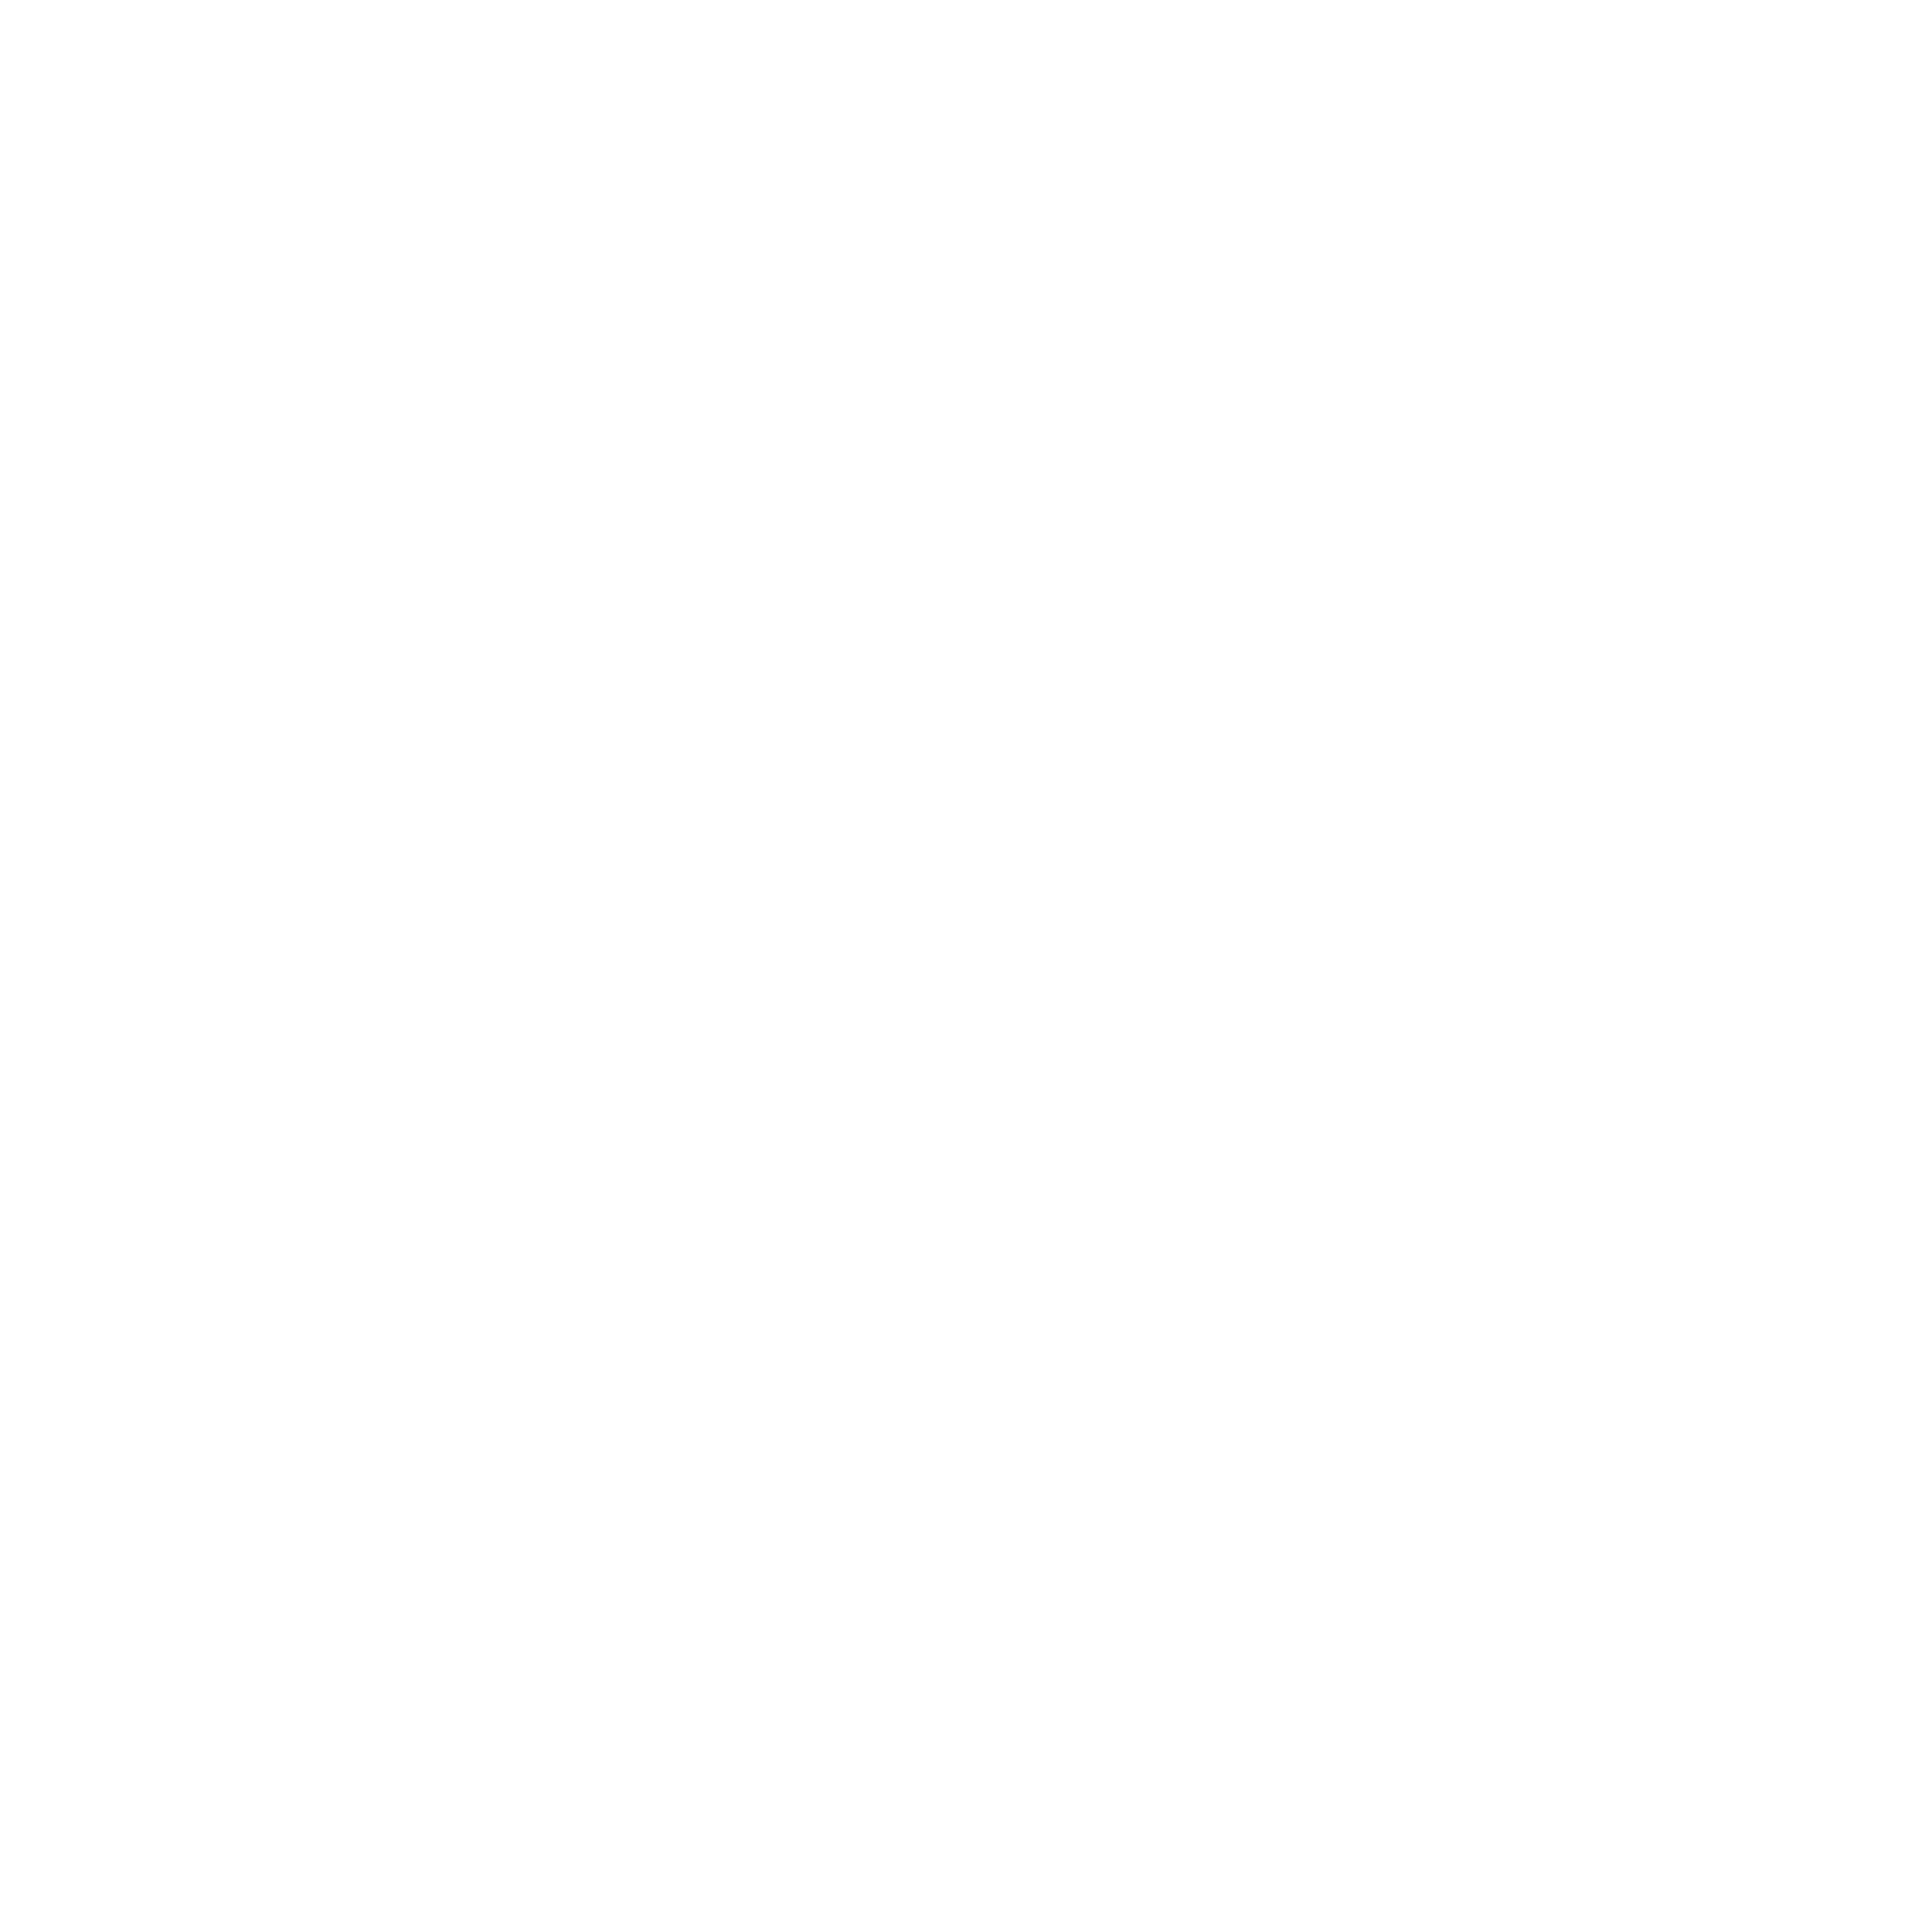 DeadSin